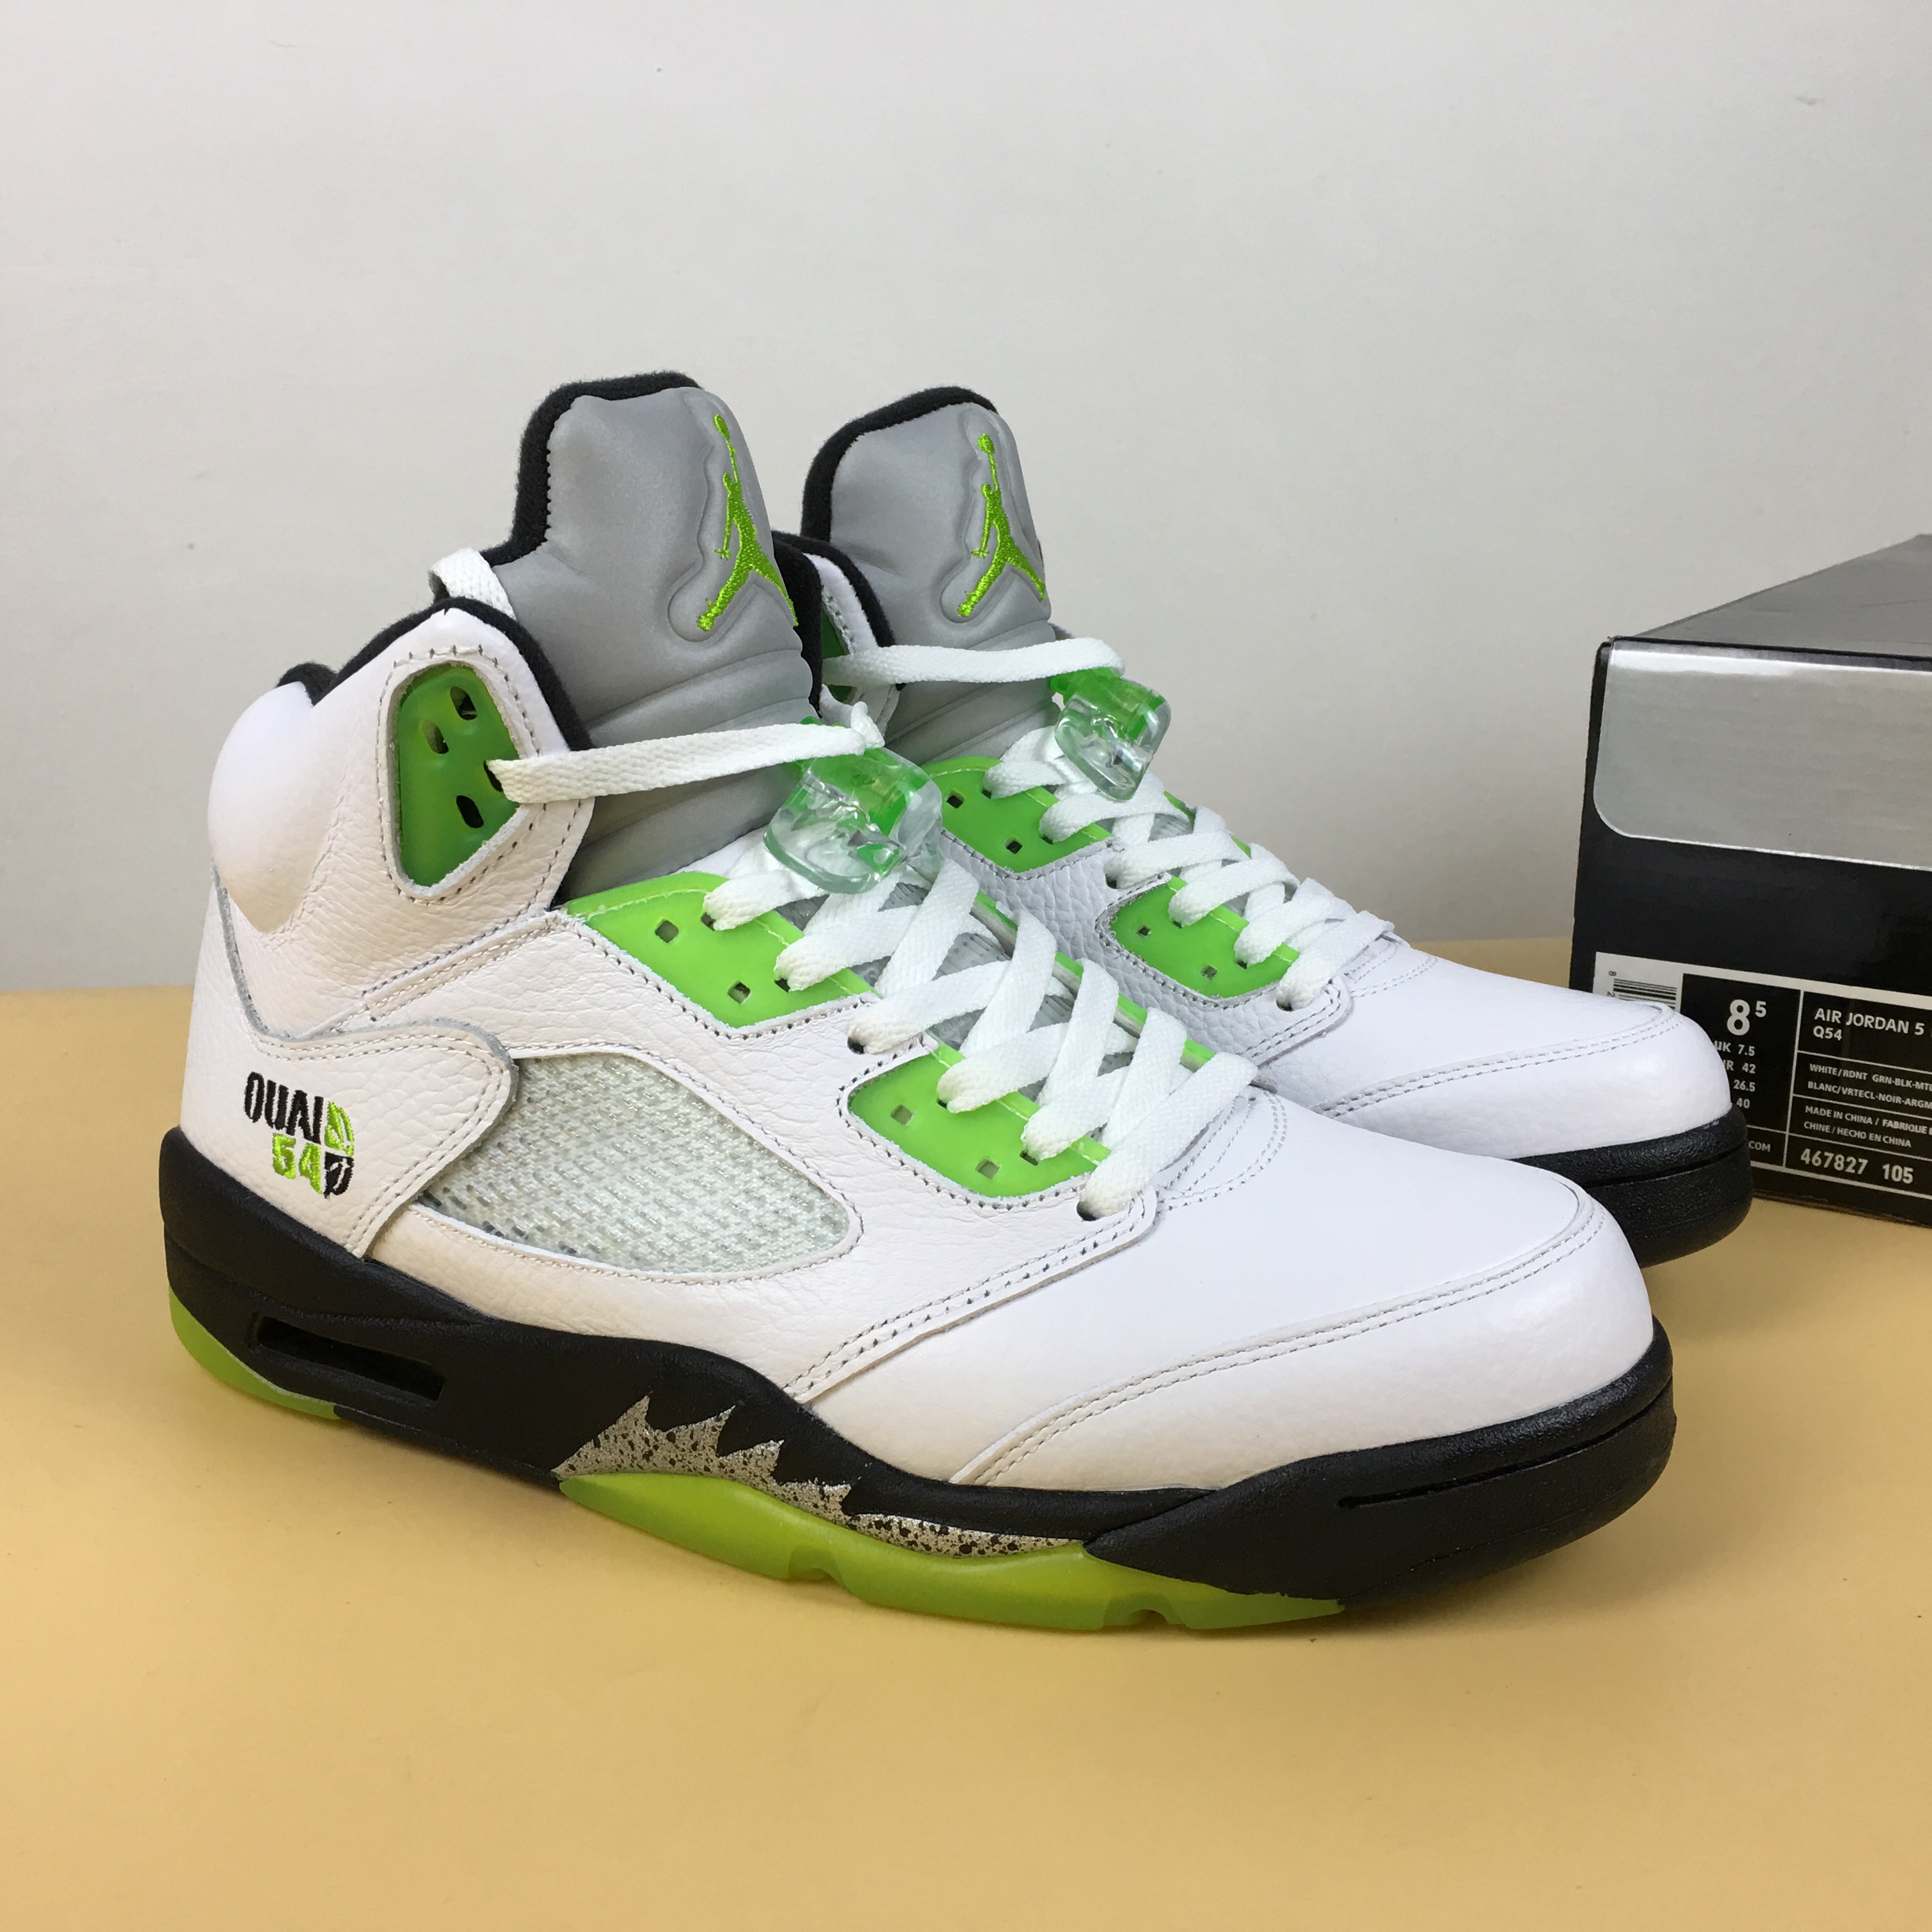 Air Jordan 5 Quai54 White Green Black Shoes